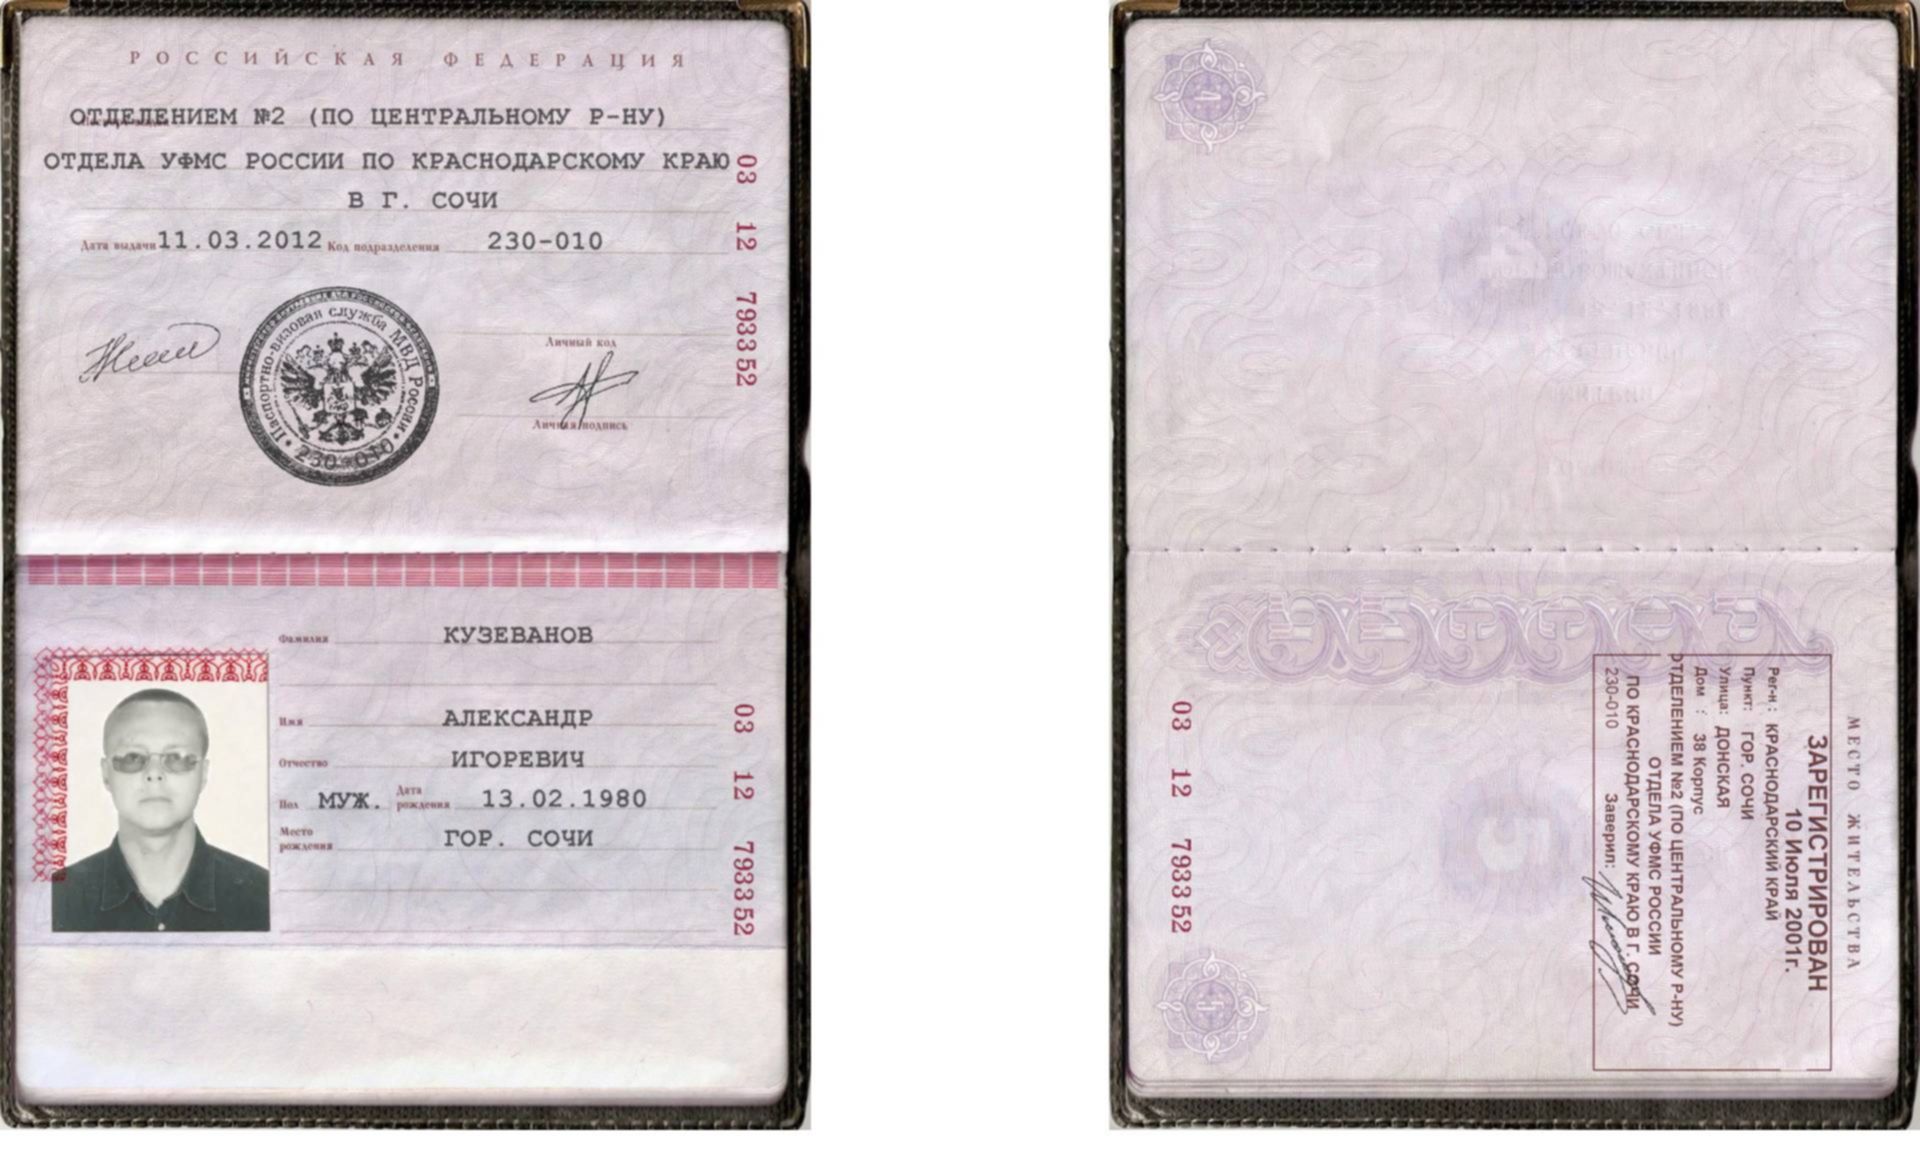 Коды паспортов краснодарского края. Скрины паспортов с пропиской.